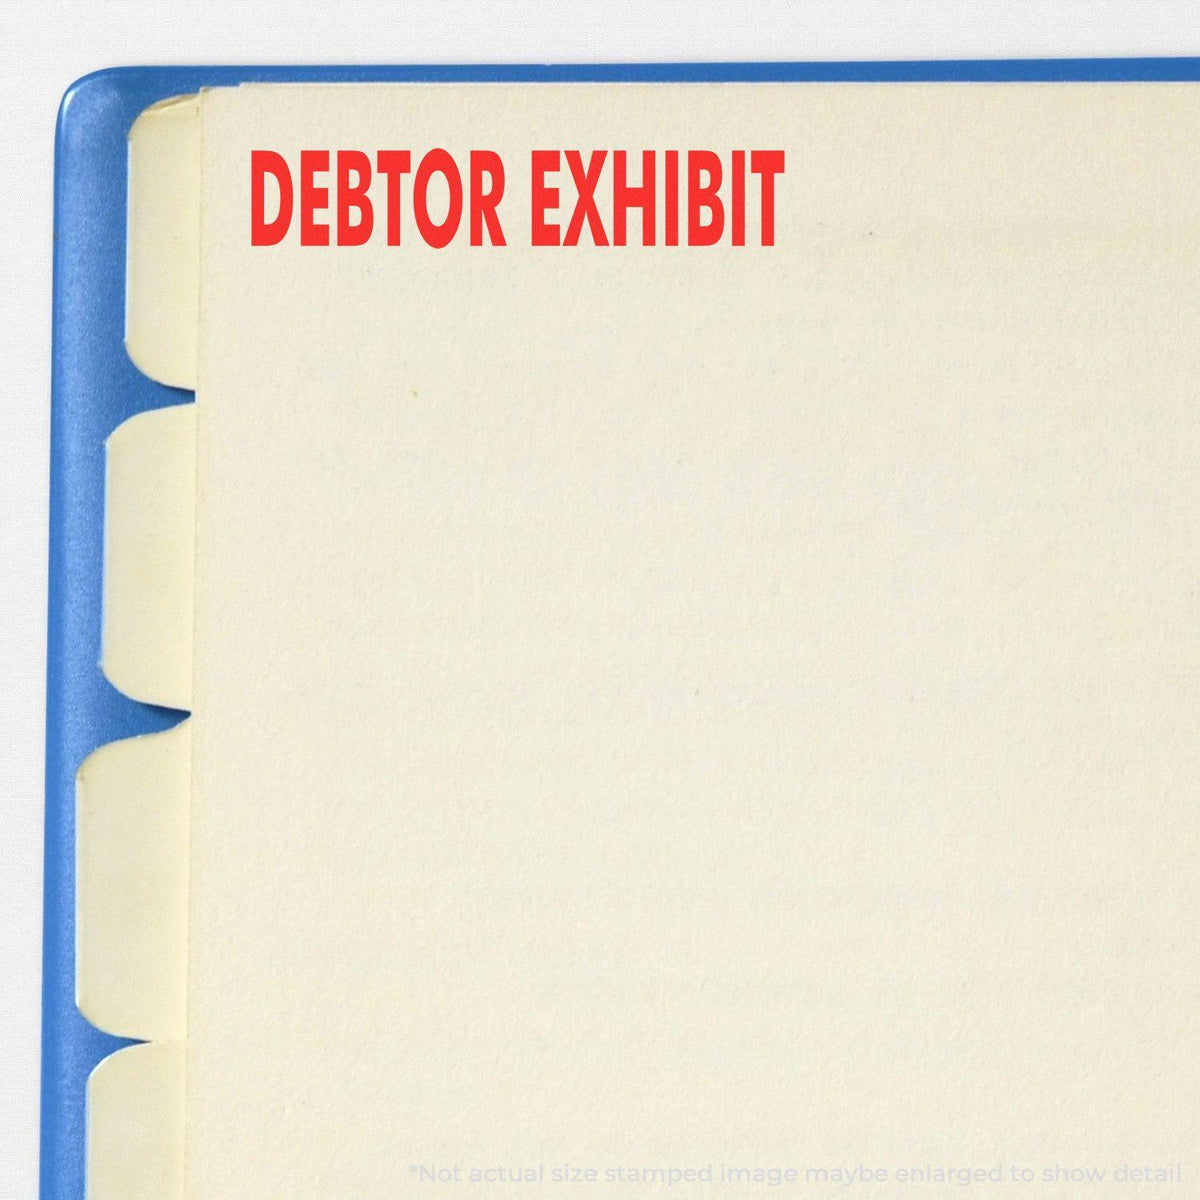 In Use Slim Pre Inked Debtor Exhibit Stamp Image